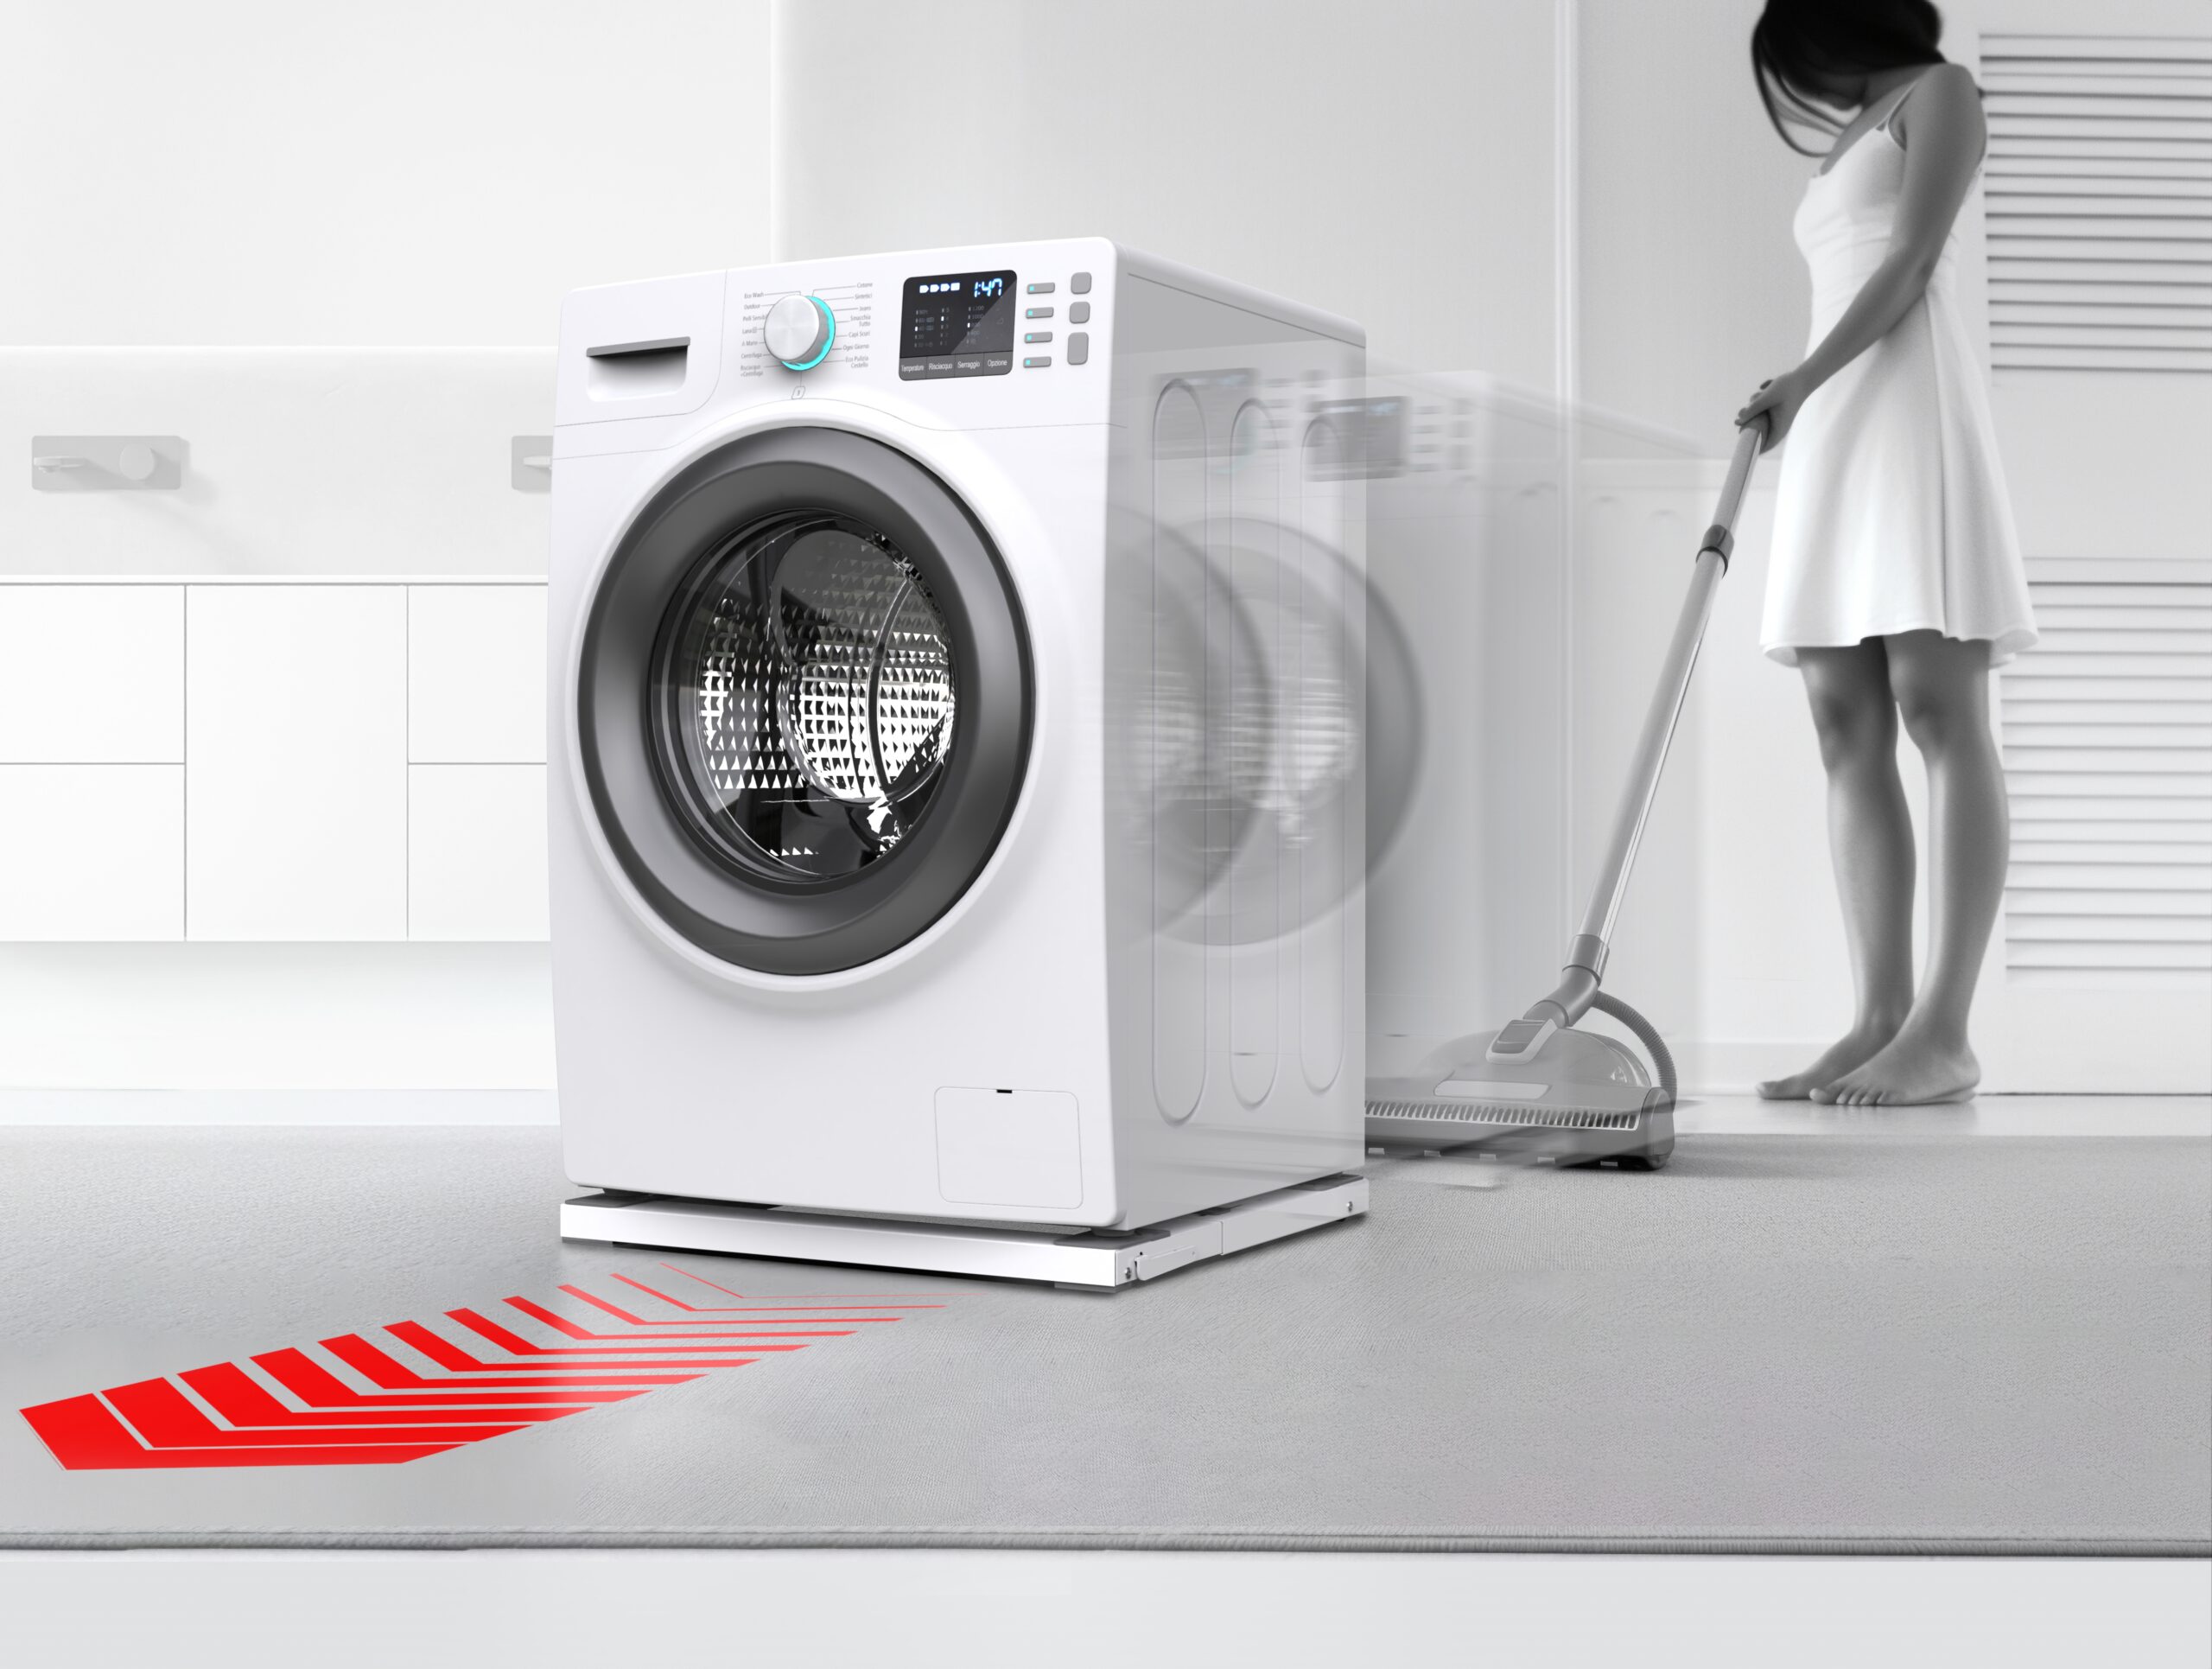 Base Wash Pro Meliconi Per Lavatrice E Asciugatrice